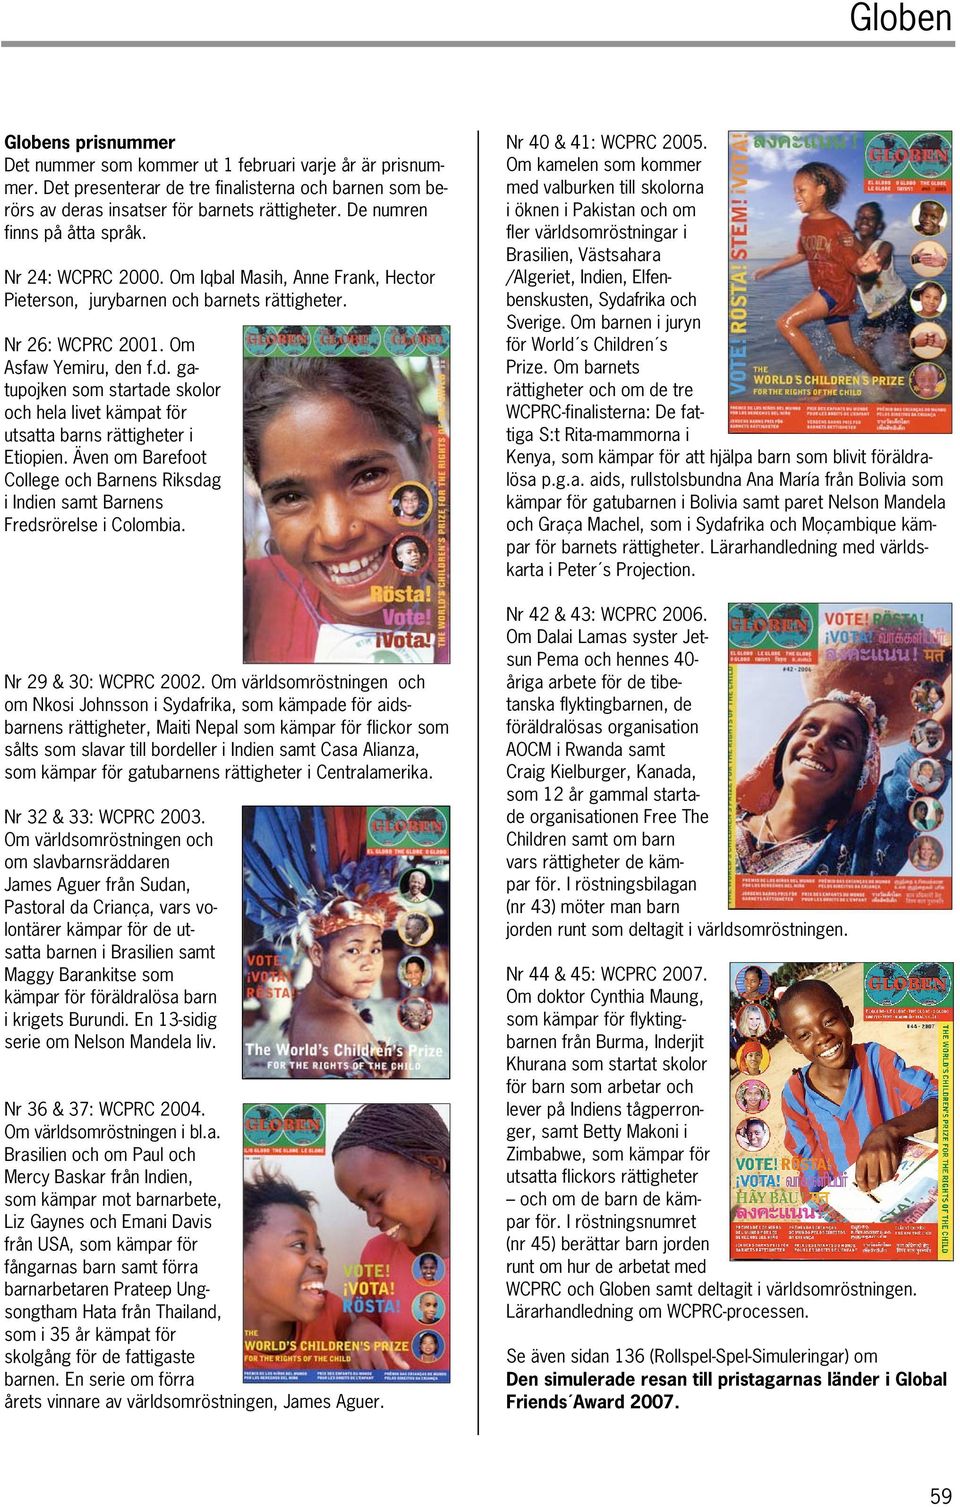 n f.d. gatupojken som startade skolor och hela livet kämpat för utsatta barns rättigheter i Etiopien. Även om Barefoot College och Barnens Riksdag i Indien samt Barnens Fredsrörelse i Colombia.